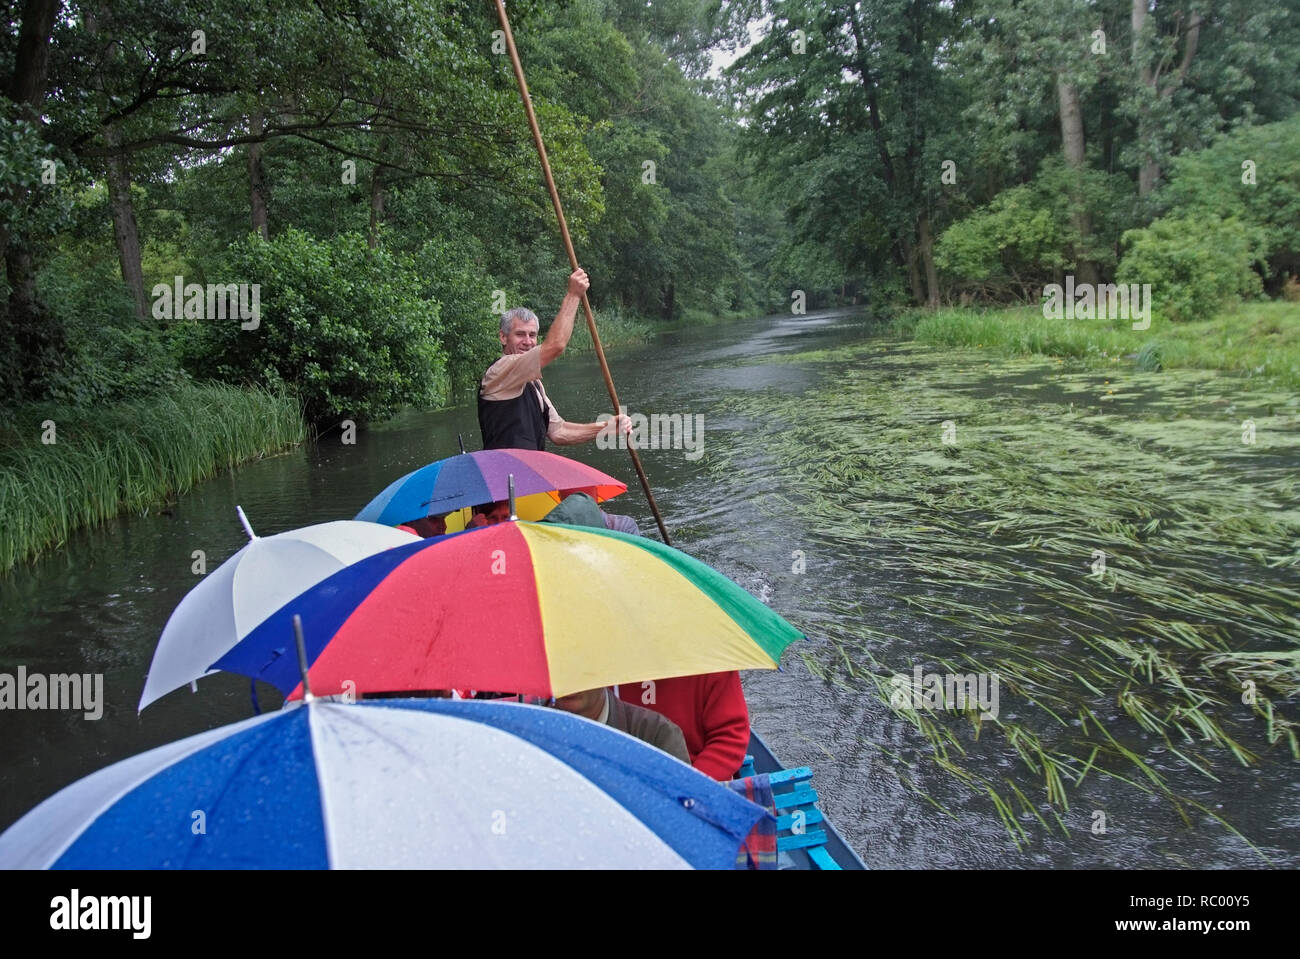 Fahrt mit einem typischen Spreewaldkahn bei Regenwetter, hier auf der Hauptspree, Spreewald, Landkreis Oberspreewald-Lausitzkreis, Land Brandenburg, D Stock Photo